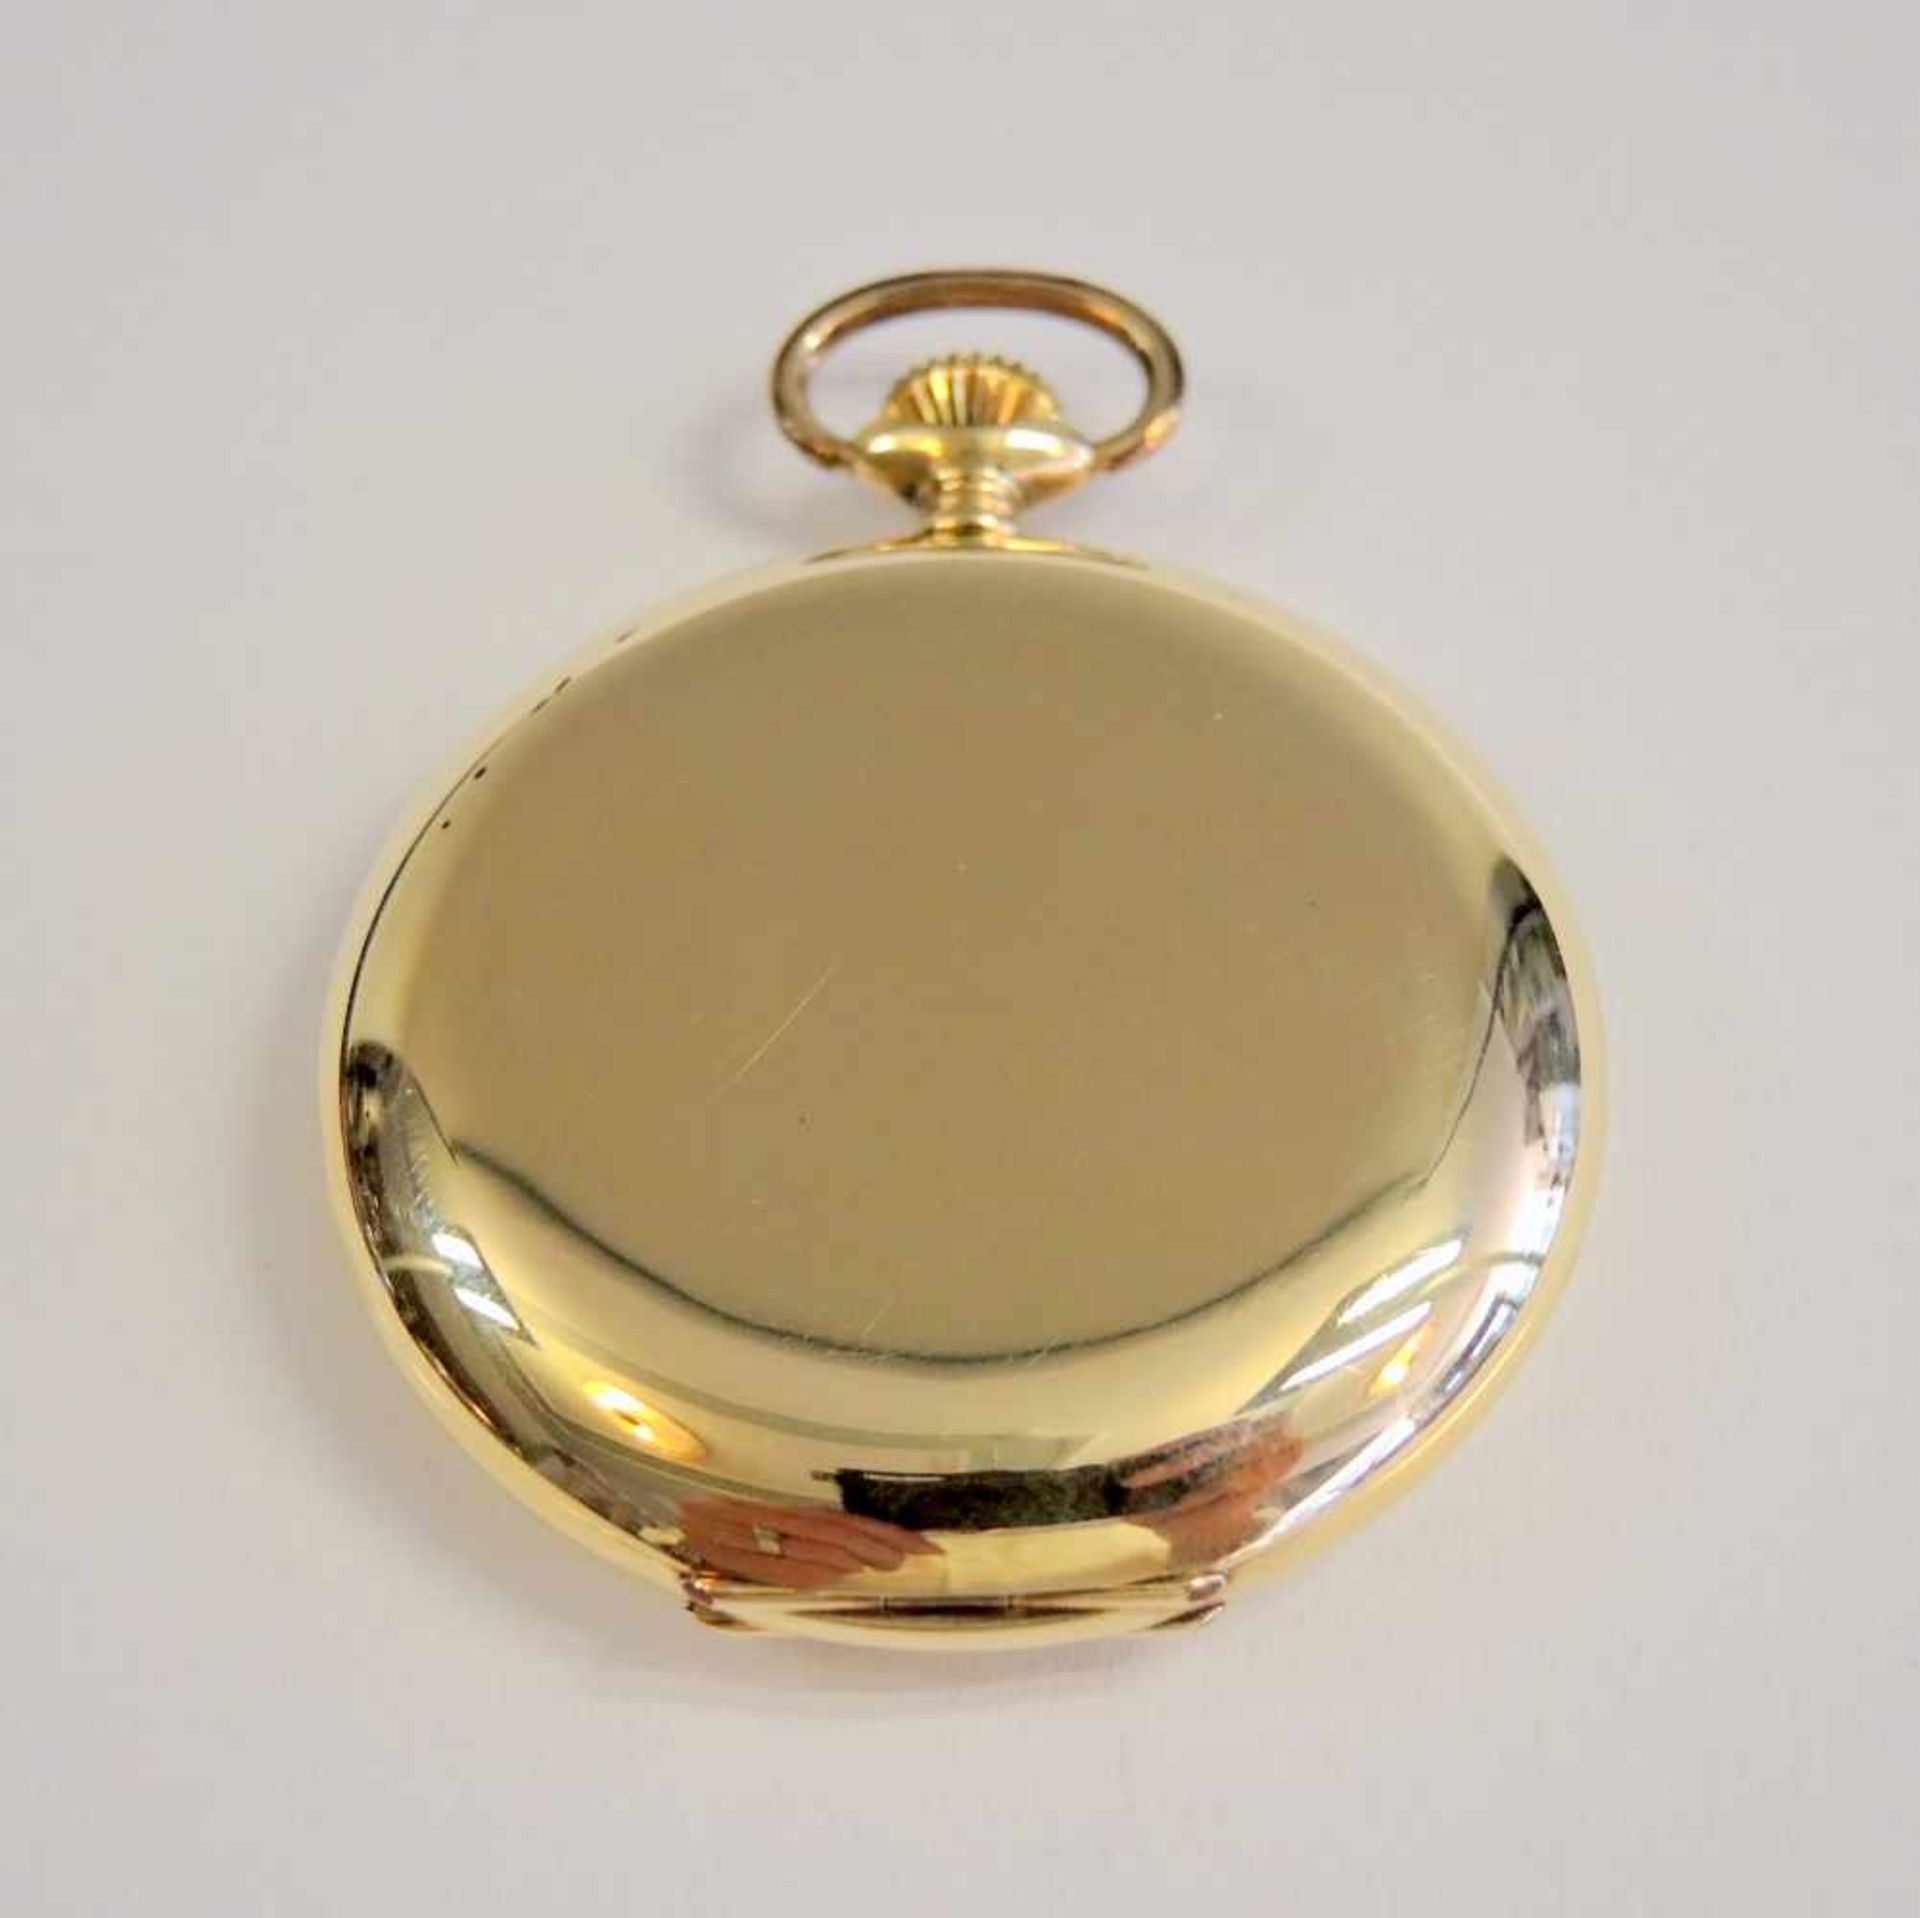 Tissot, Savonette-Taschenuhr14 K. Gelbgold. Gut erhalten, gangbar. Um 1920. Ø ca. 50 mm, Gewicht - Bild 3 aus 3